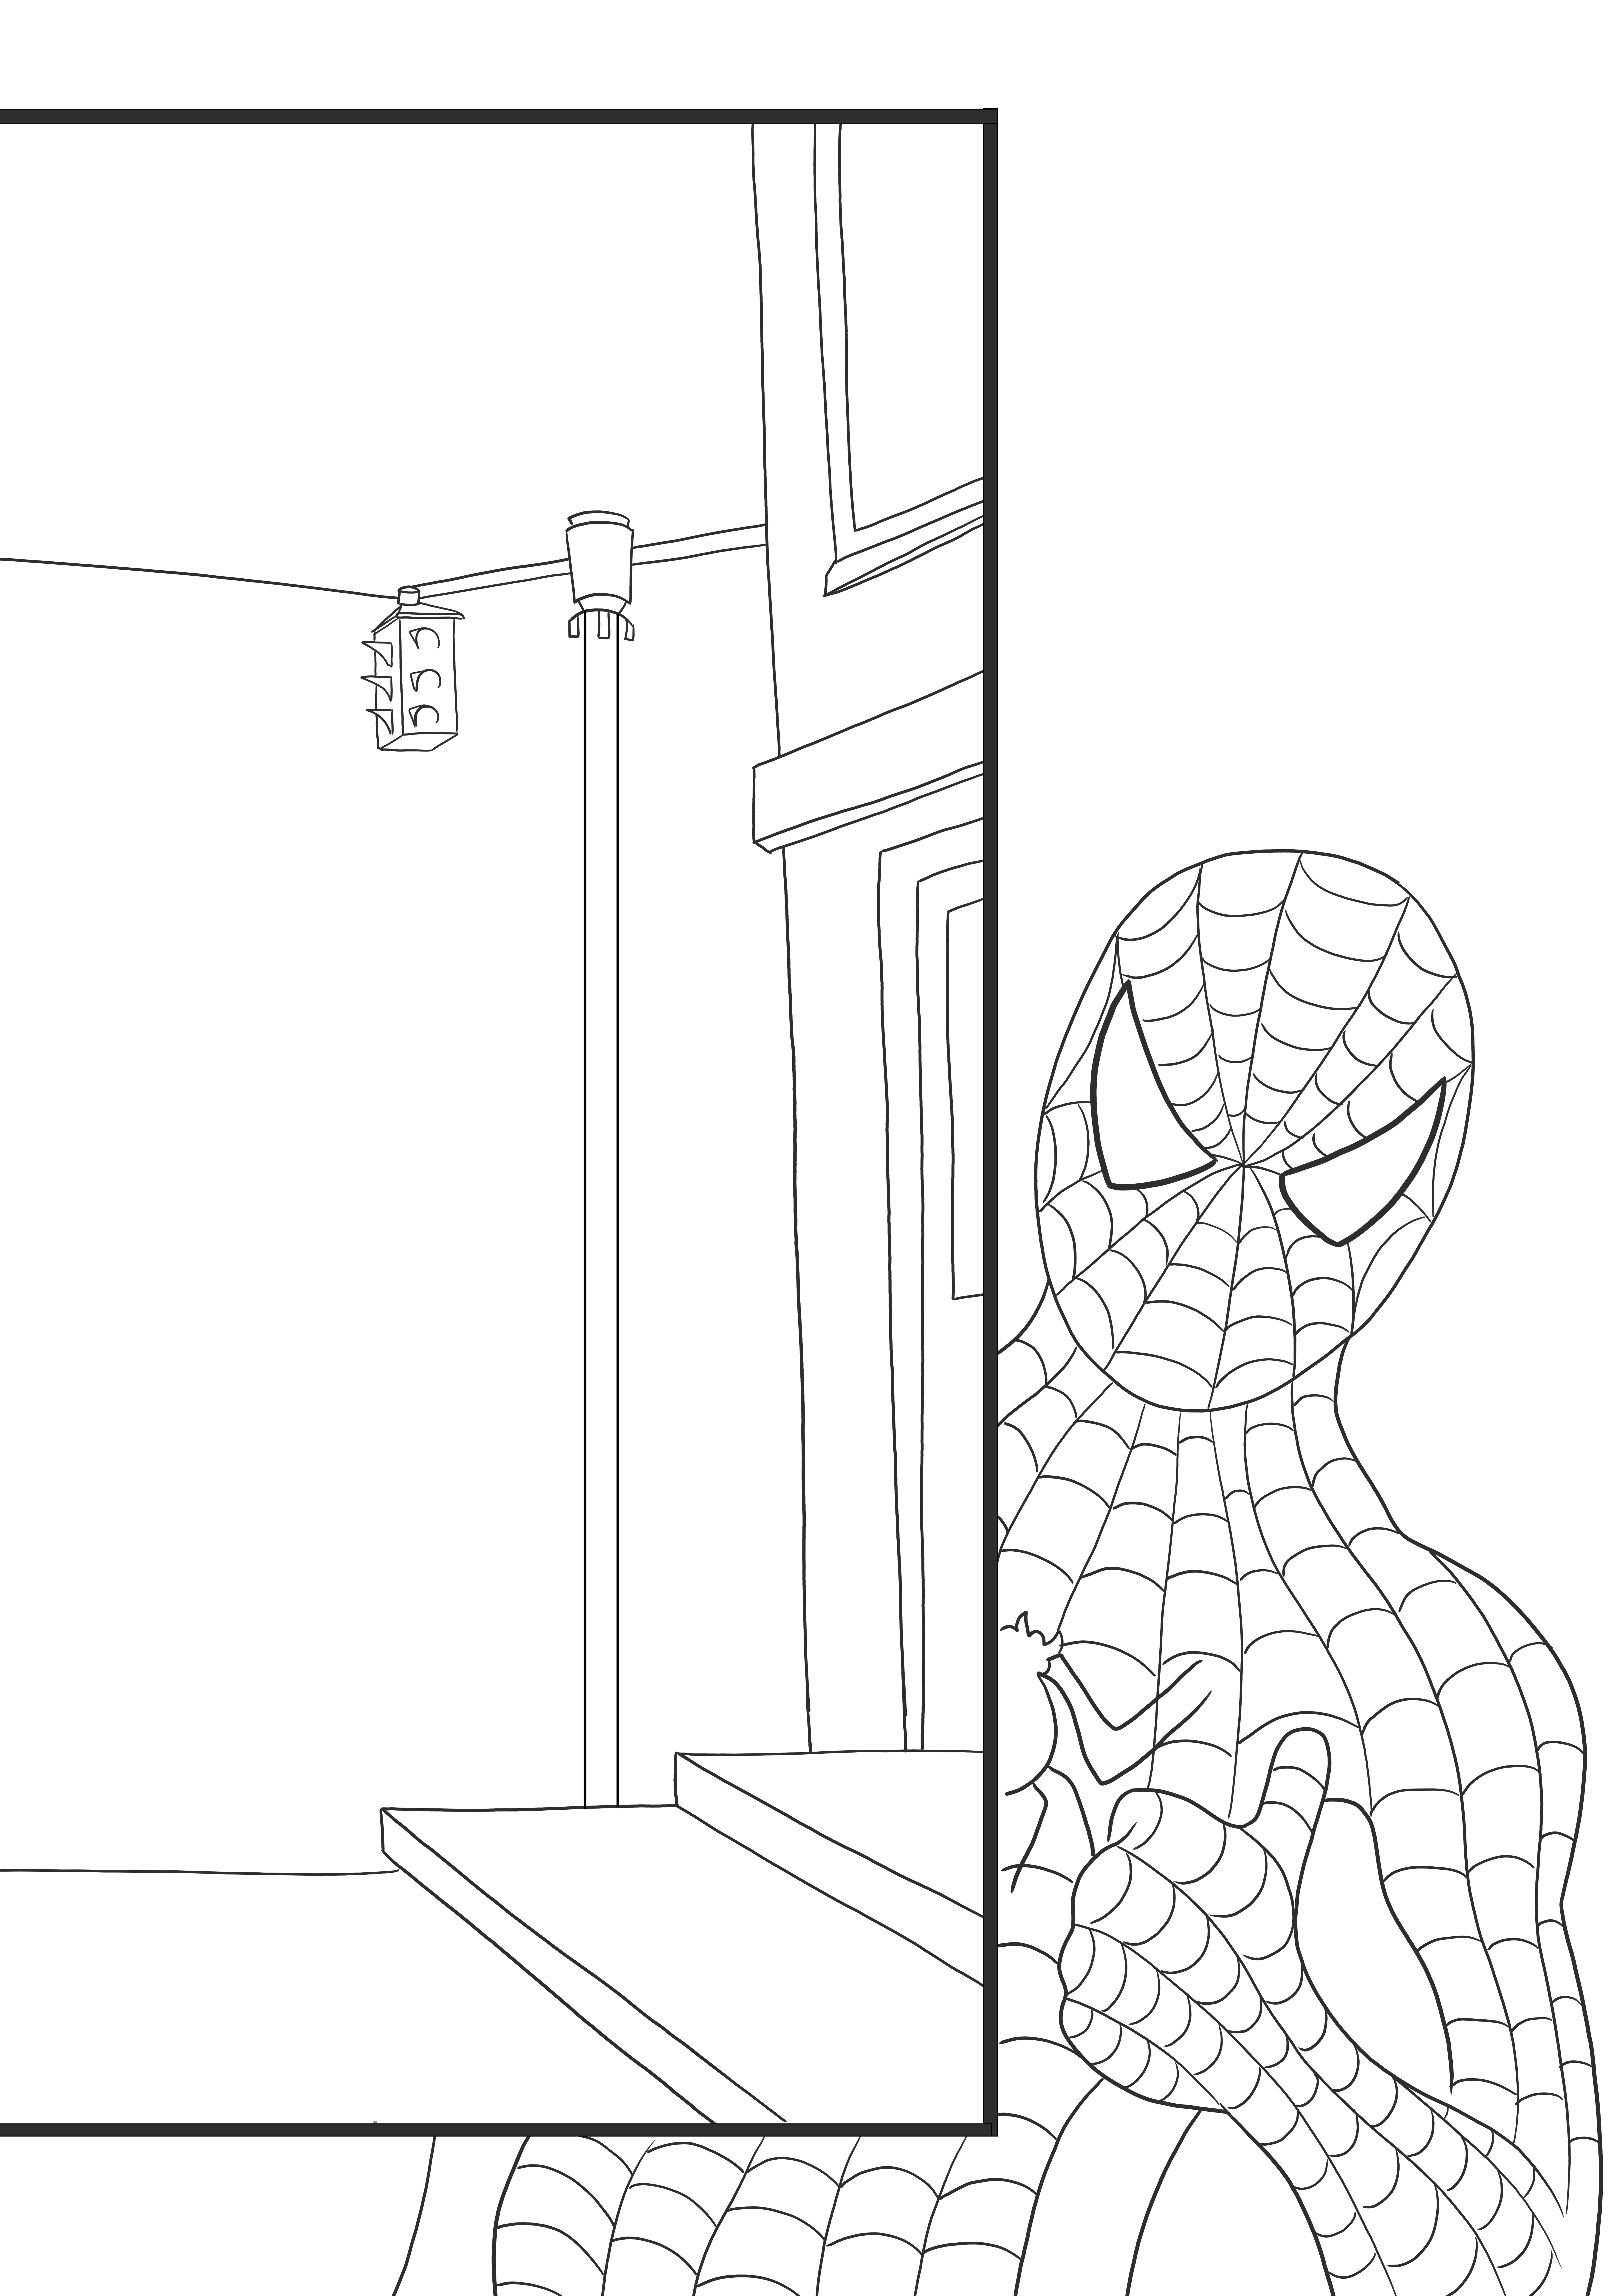 Örümcek Adam, penceresiz bir boyama ve baskı görüntüsü üzerinde casusluk yapıyor